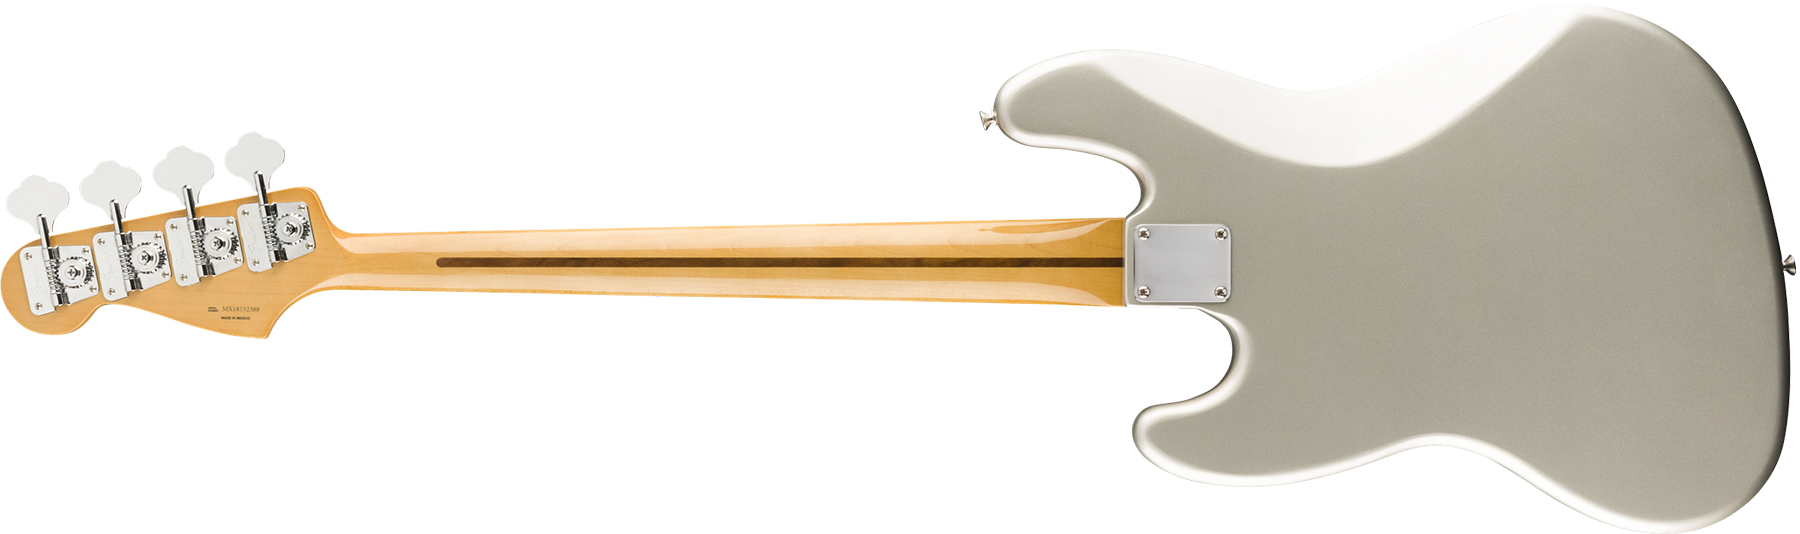 Fender Jazz Bass 70s Vintera Vintage Mex Pf - Inca Silver - Bajo eléctrico de cuerpo sólido - Variation 1